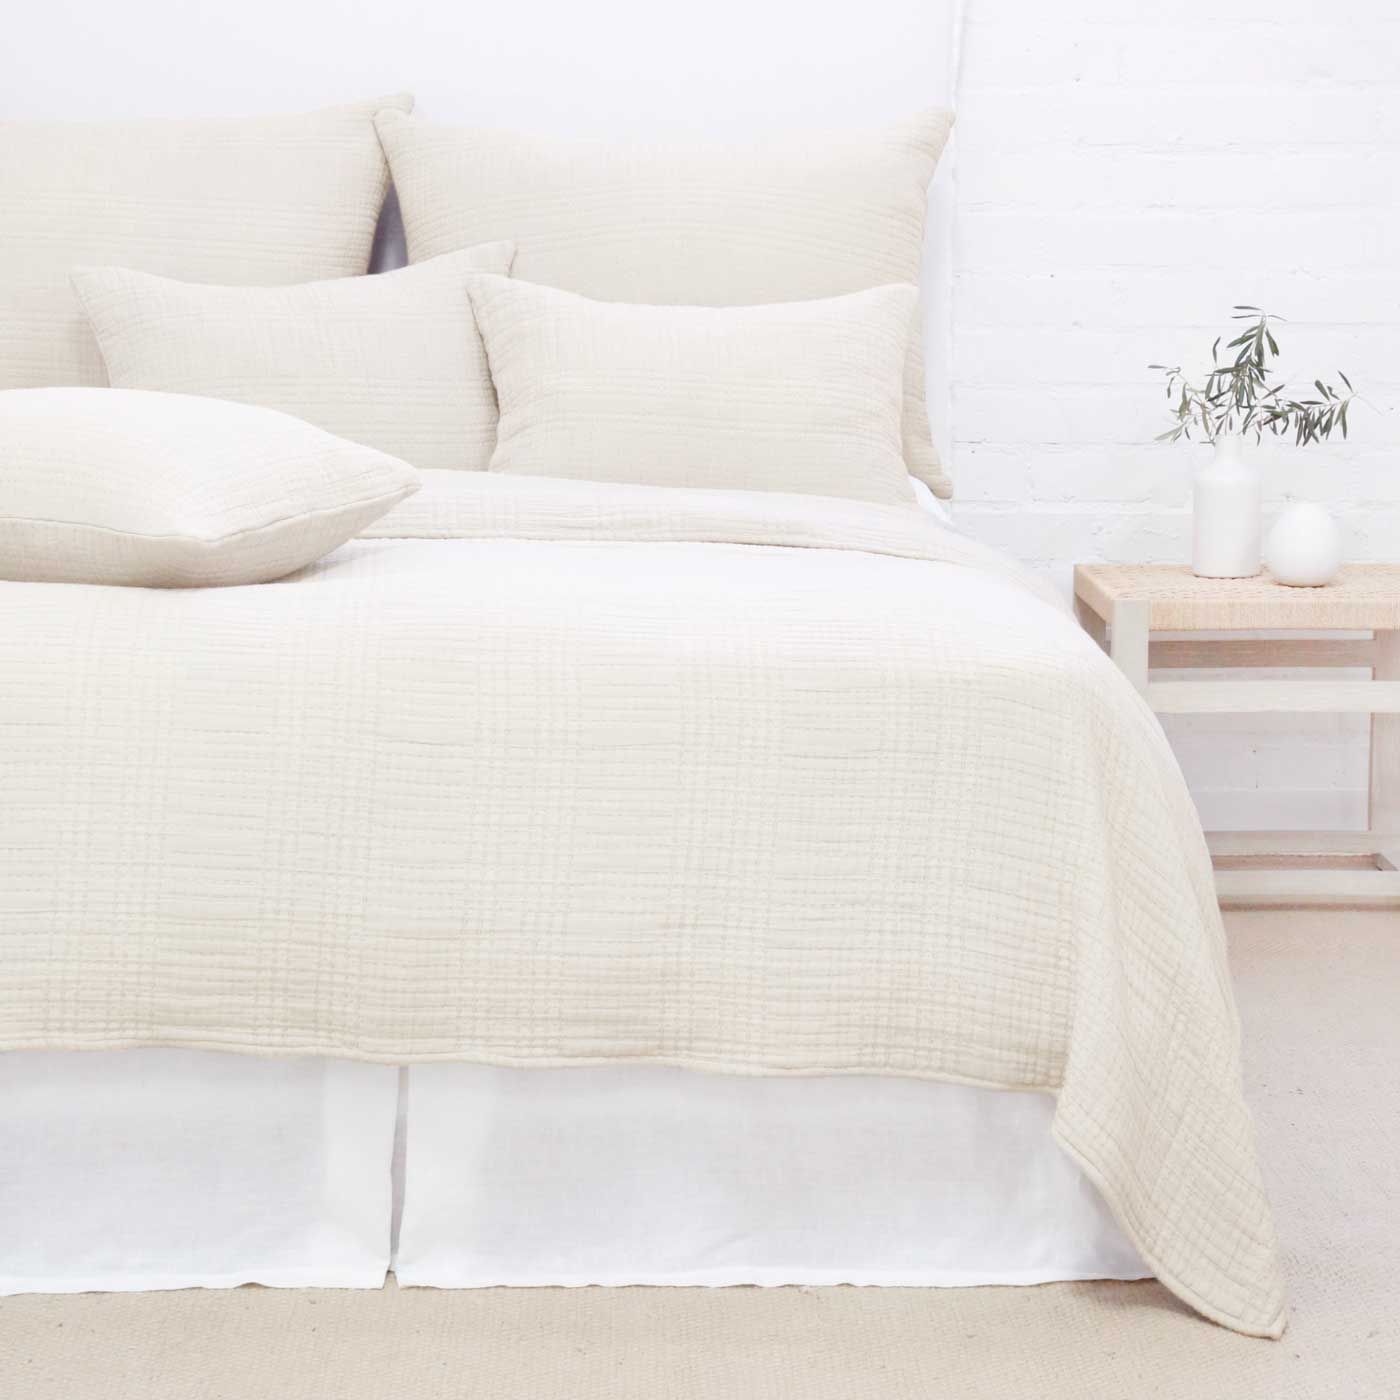 Arrowhead Blanket | Pom Pom at Home